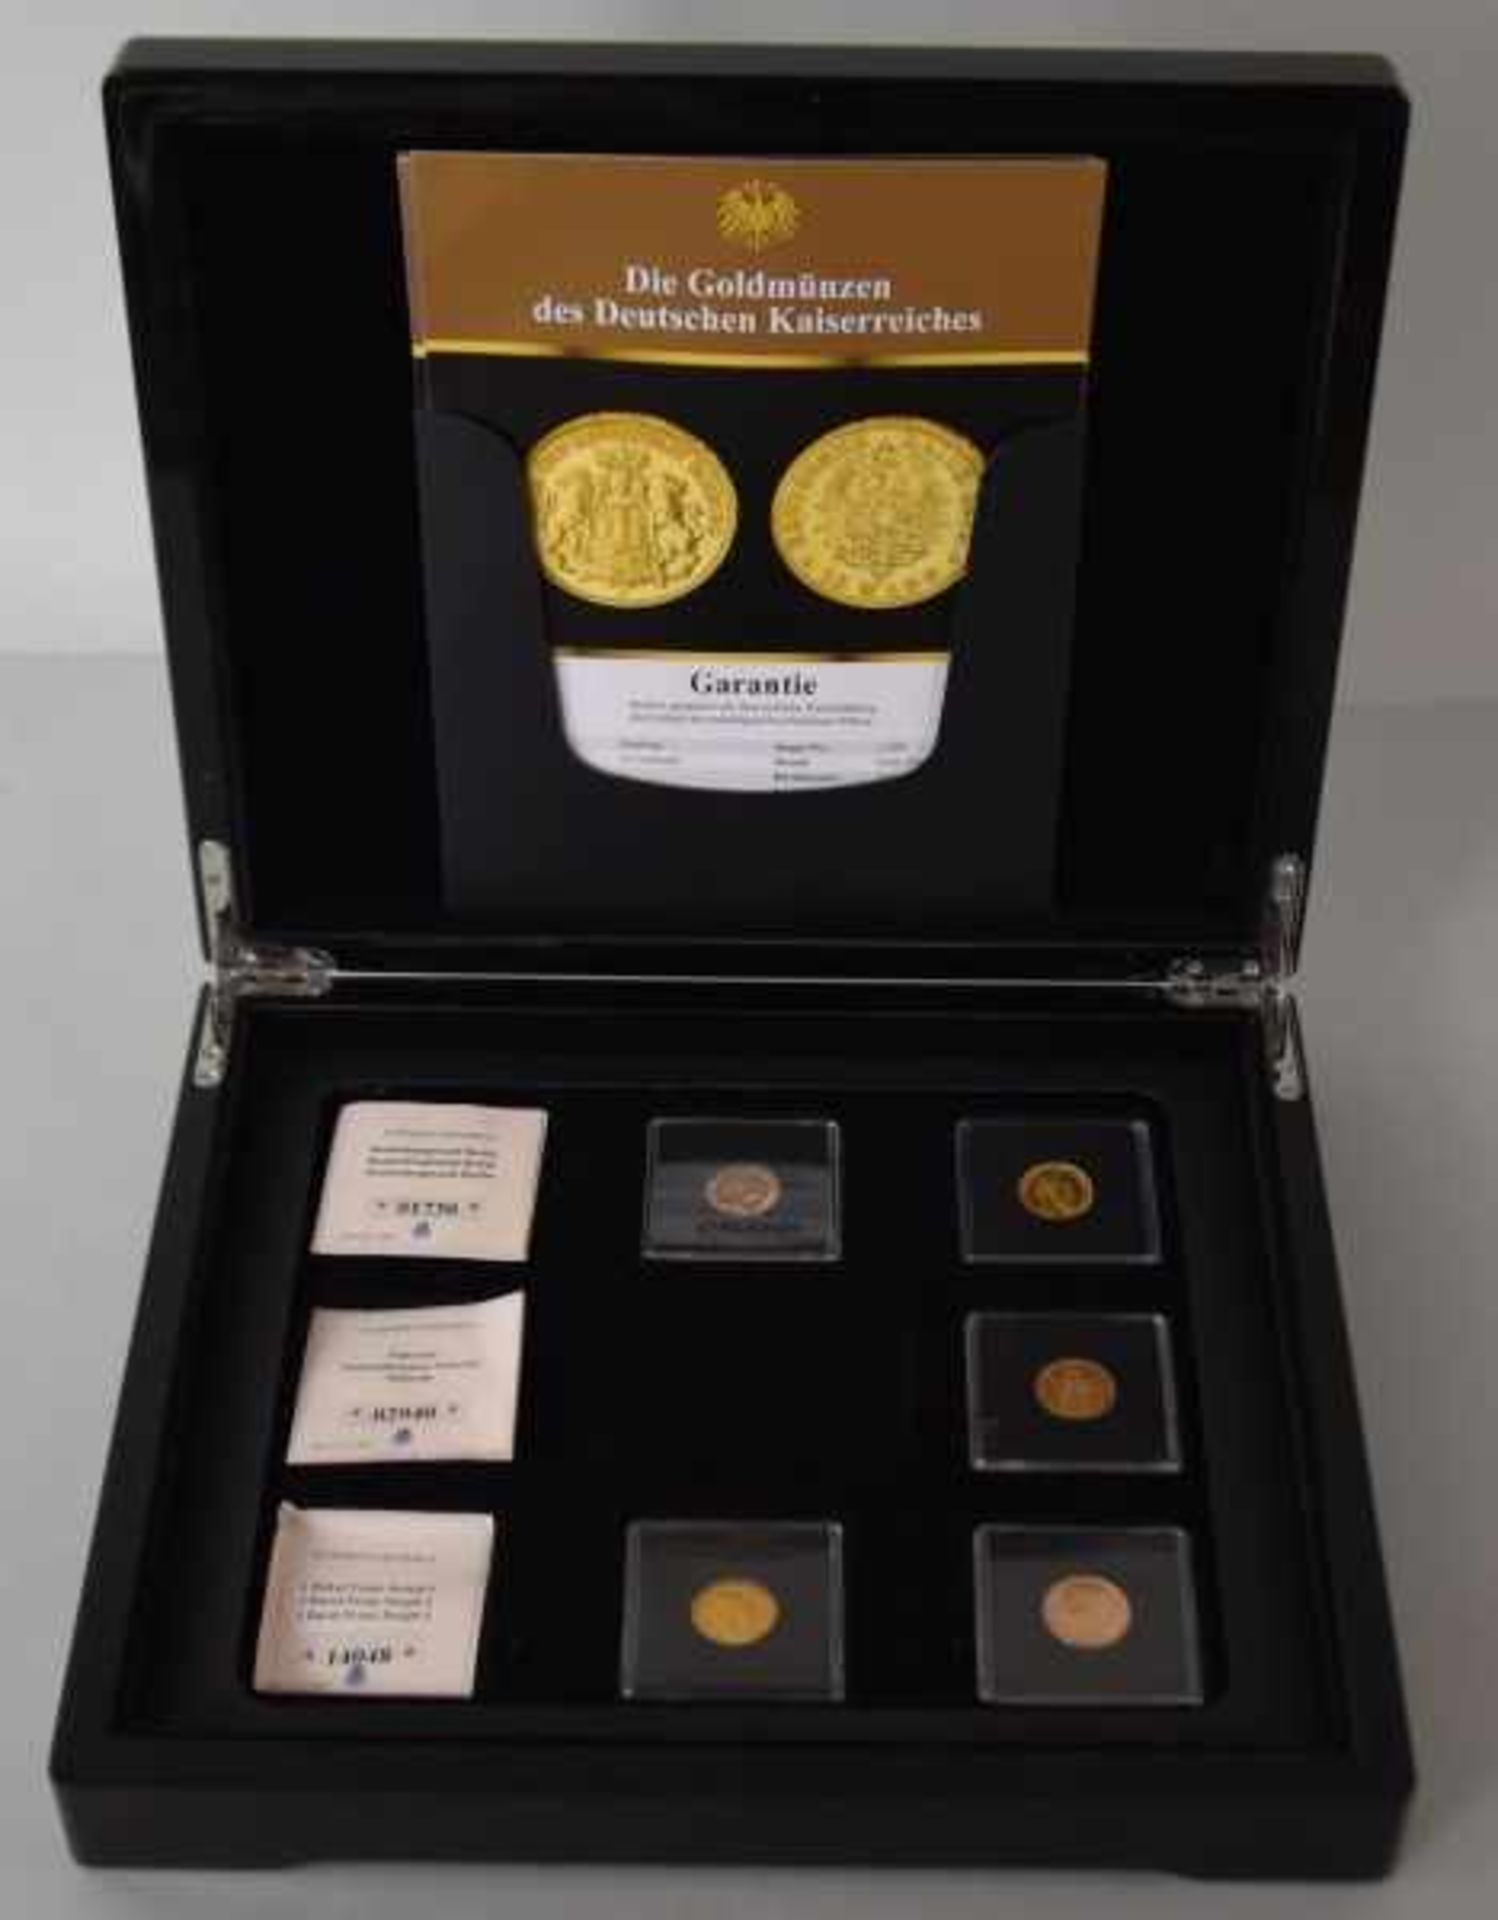 5 GOLDMÜNZEN Kaiserreich, Neuprägung, je 10 Goldmark (5 aus einem Set), Gold 900/1000, je 3,98gr,